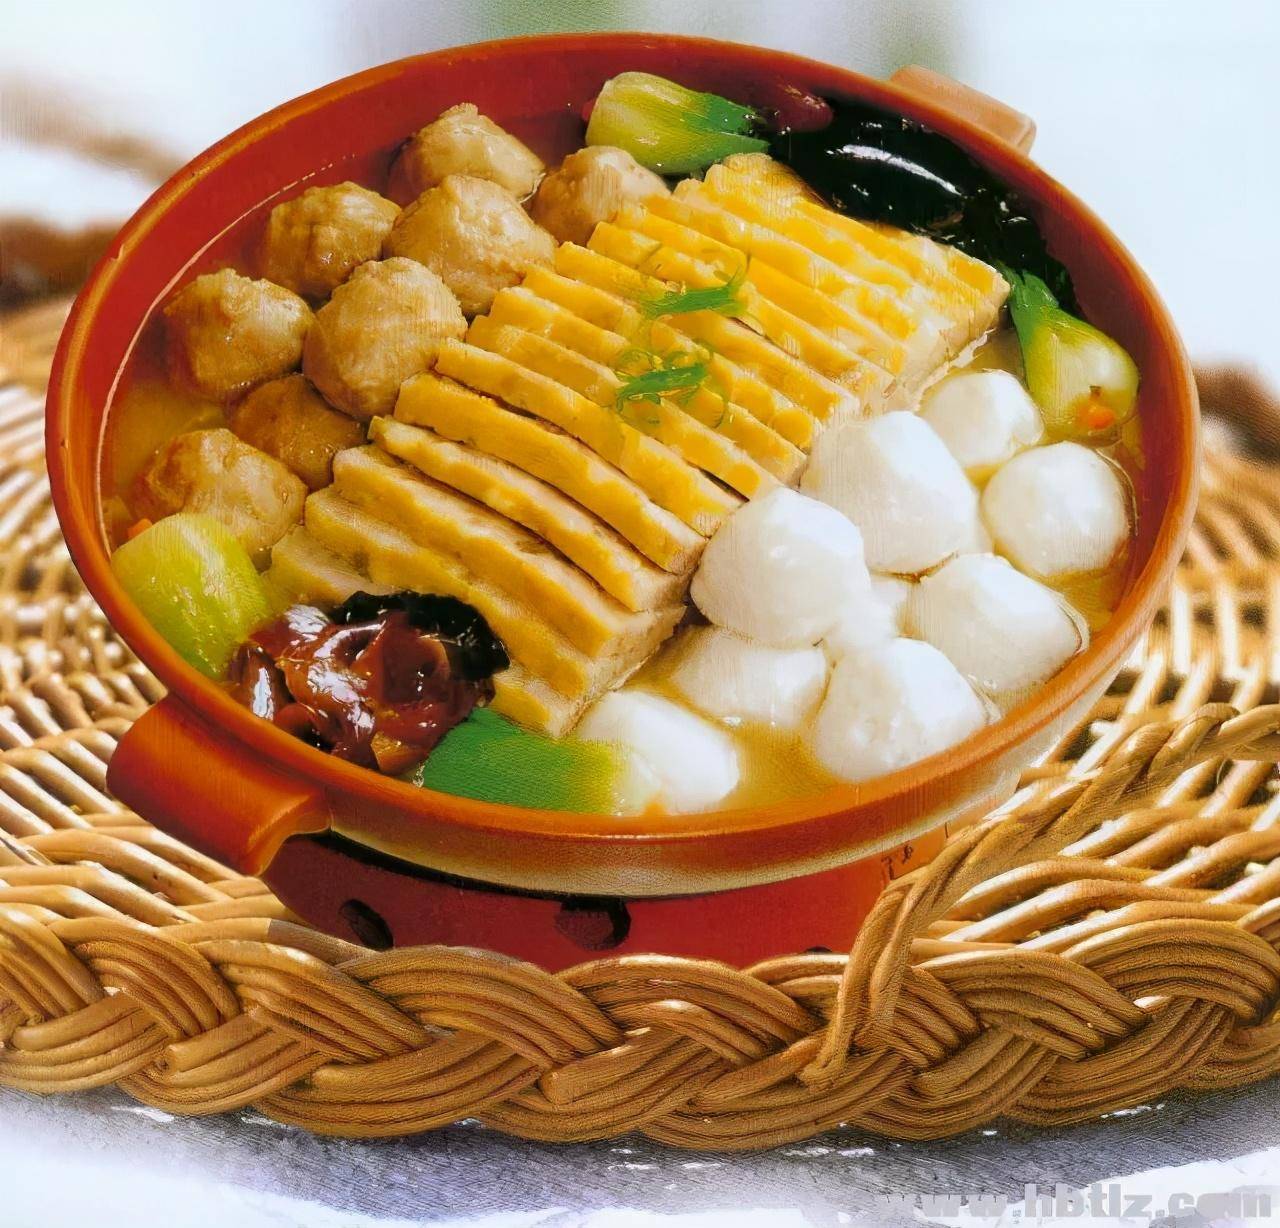 黄陂三鲜也叫黄陂三合,是黄陂民间的传统佳肴,已经流传数百年